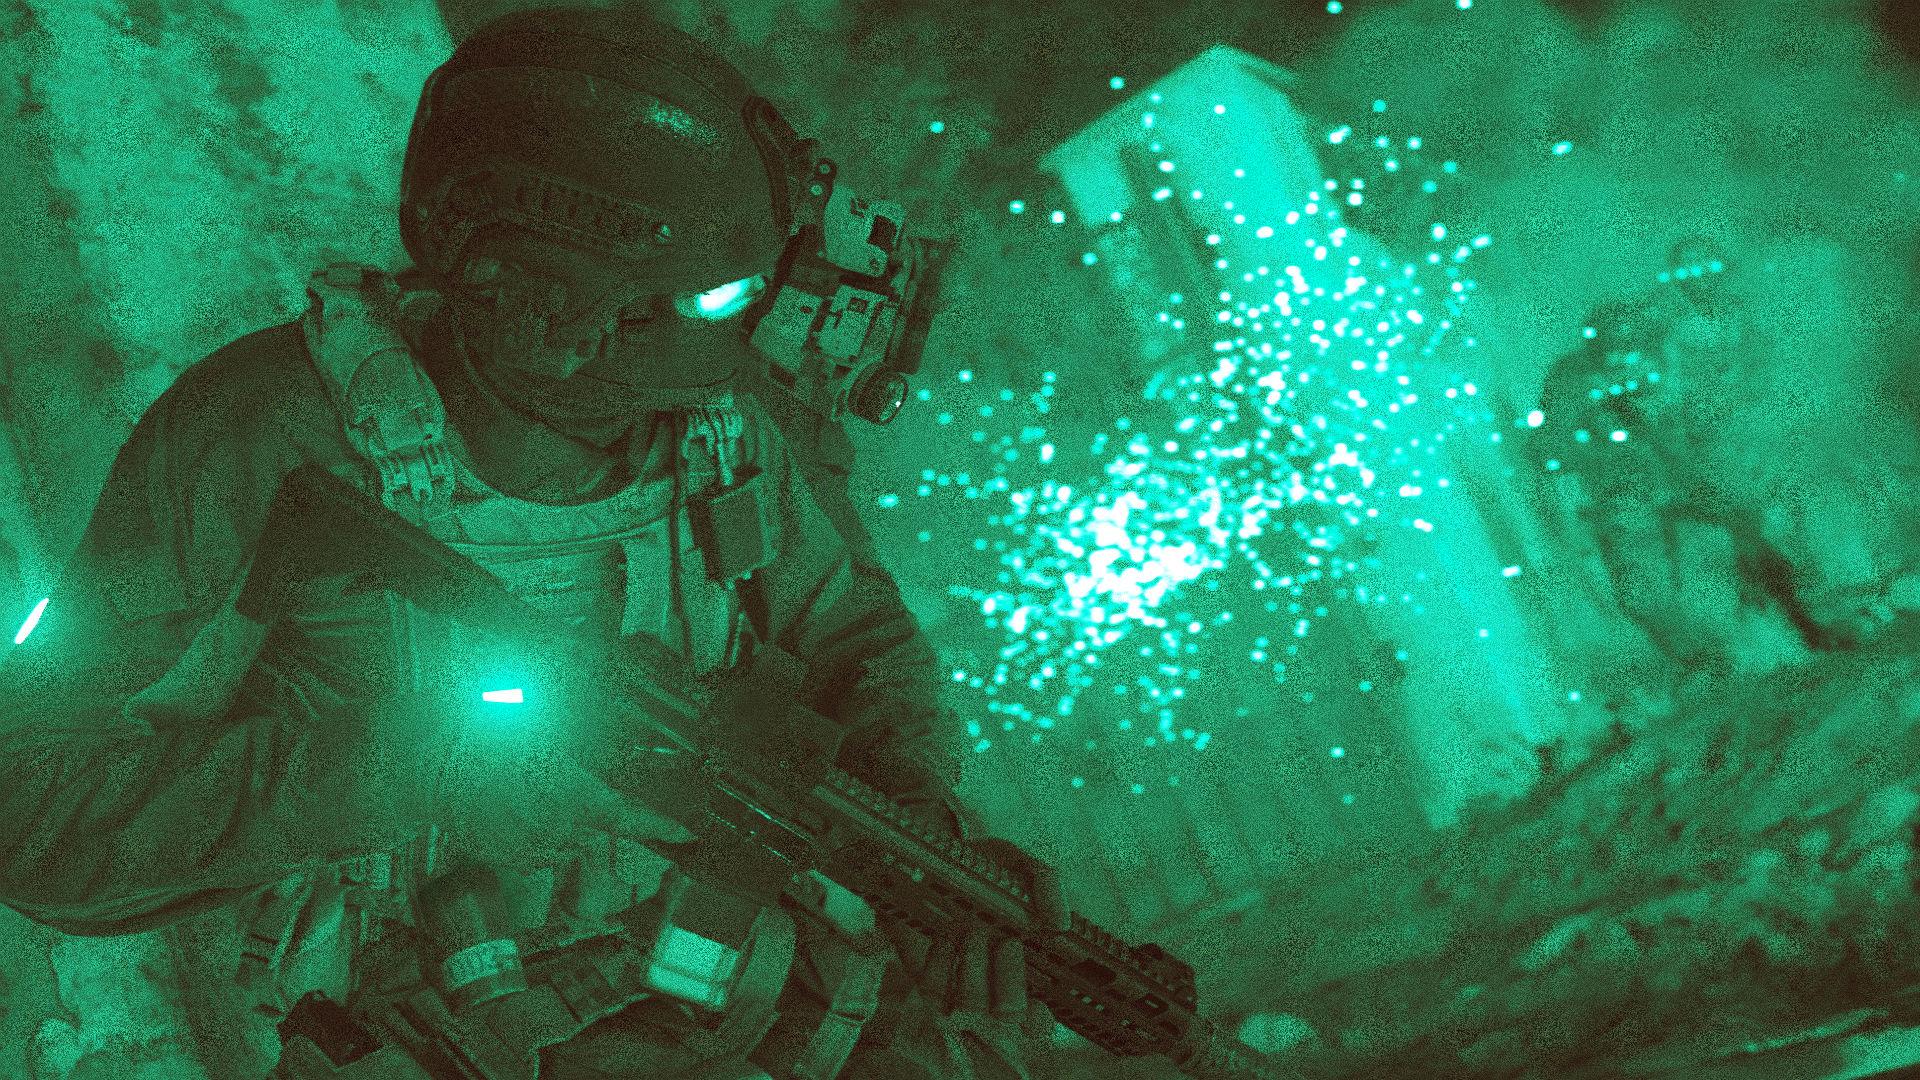 COD 2019 is Call of Duty: Modern Warfare, it's out